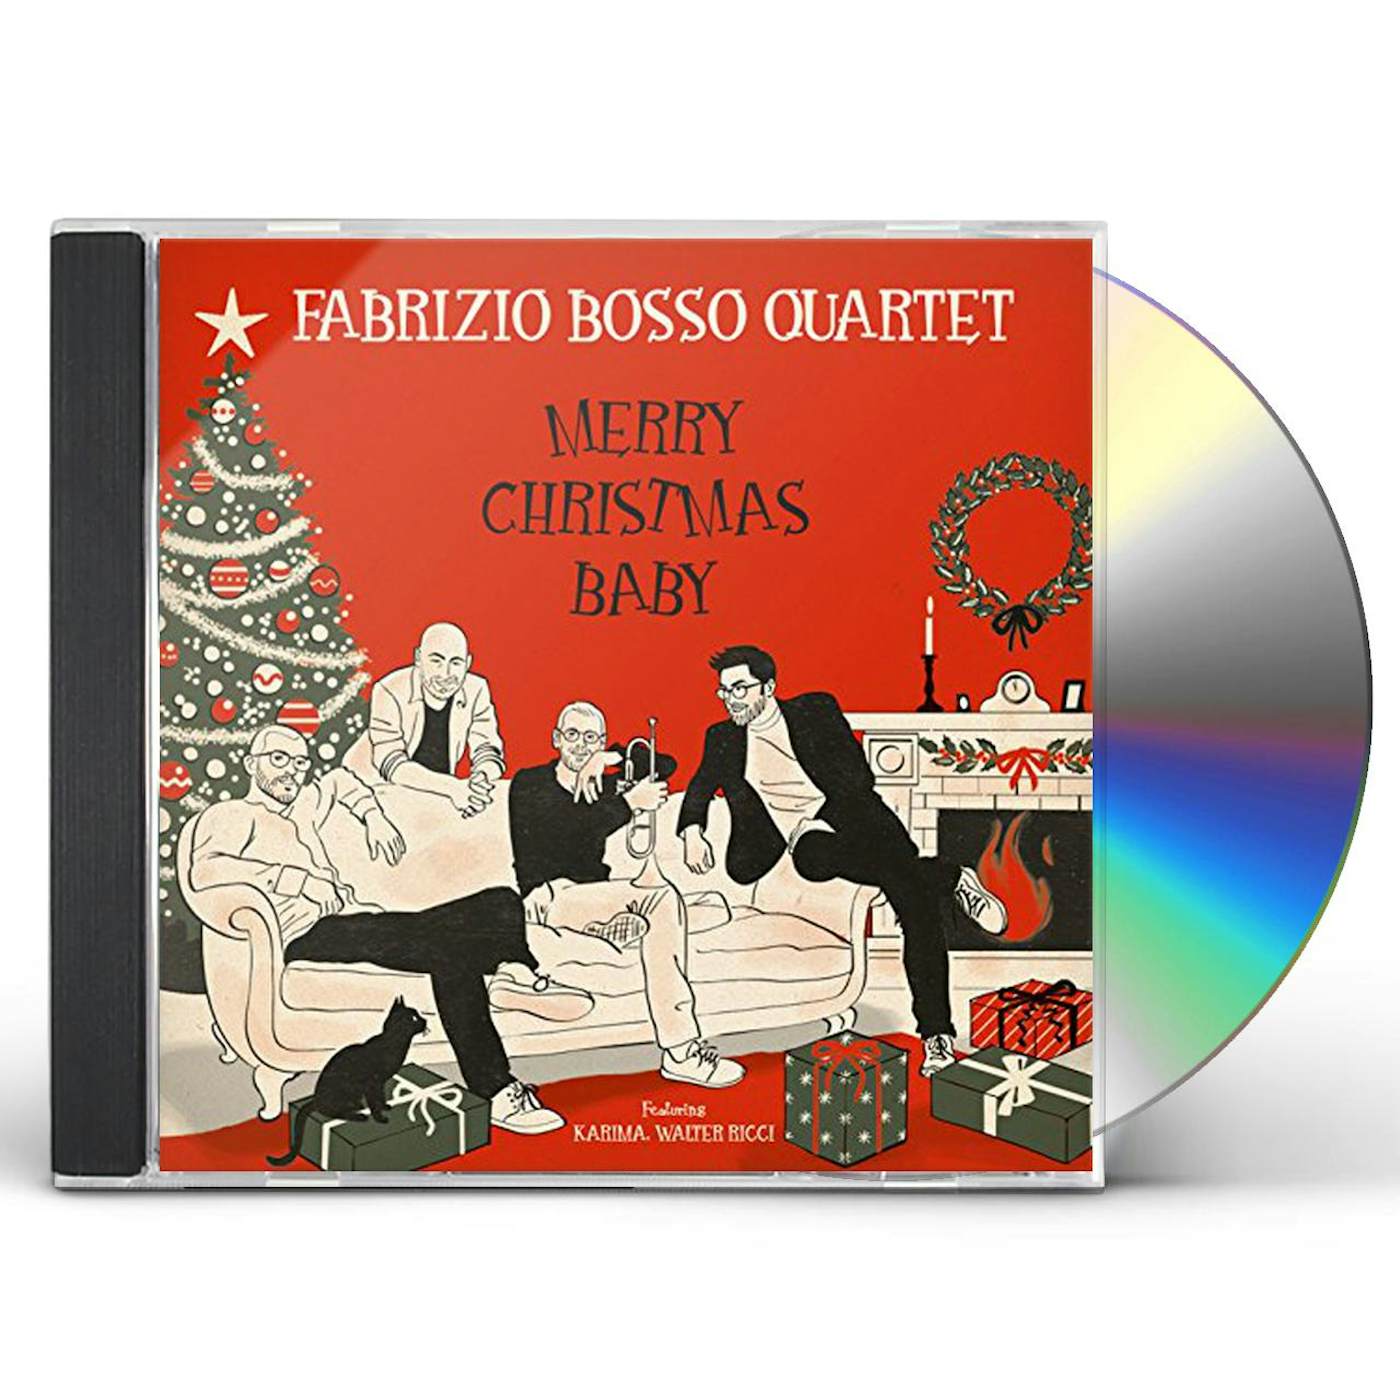 Fabrizio Bosso Quartet MERRY CHRISTMAS BABY CD